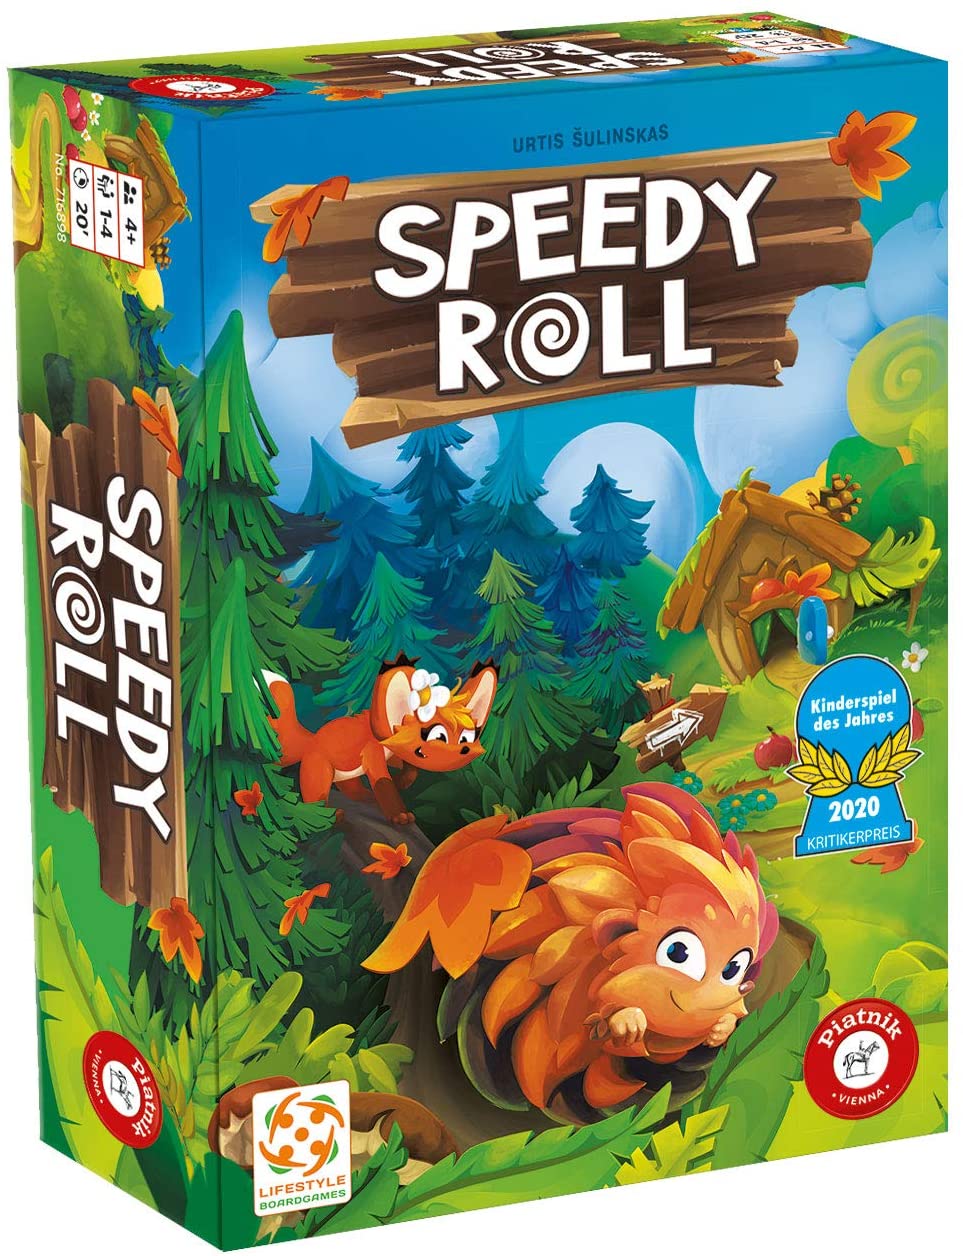 Speedy Roll Spielanleitung – PDF Download 0 (0)